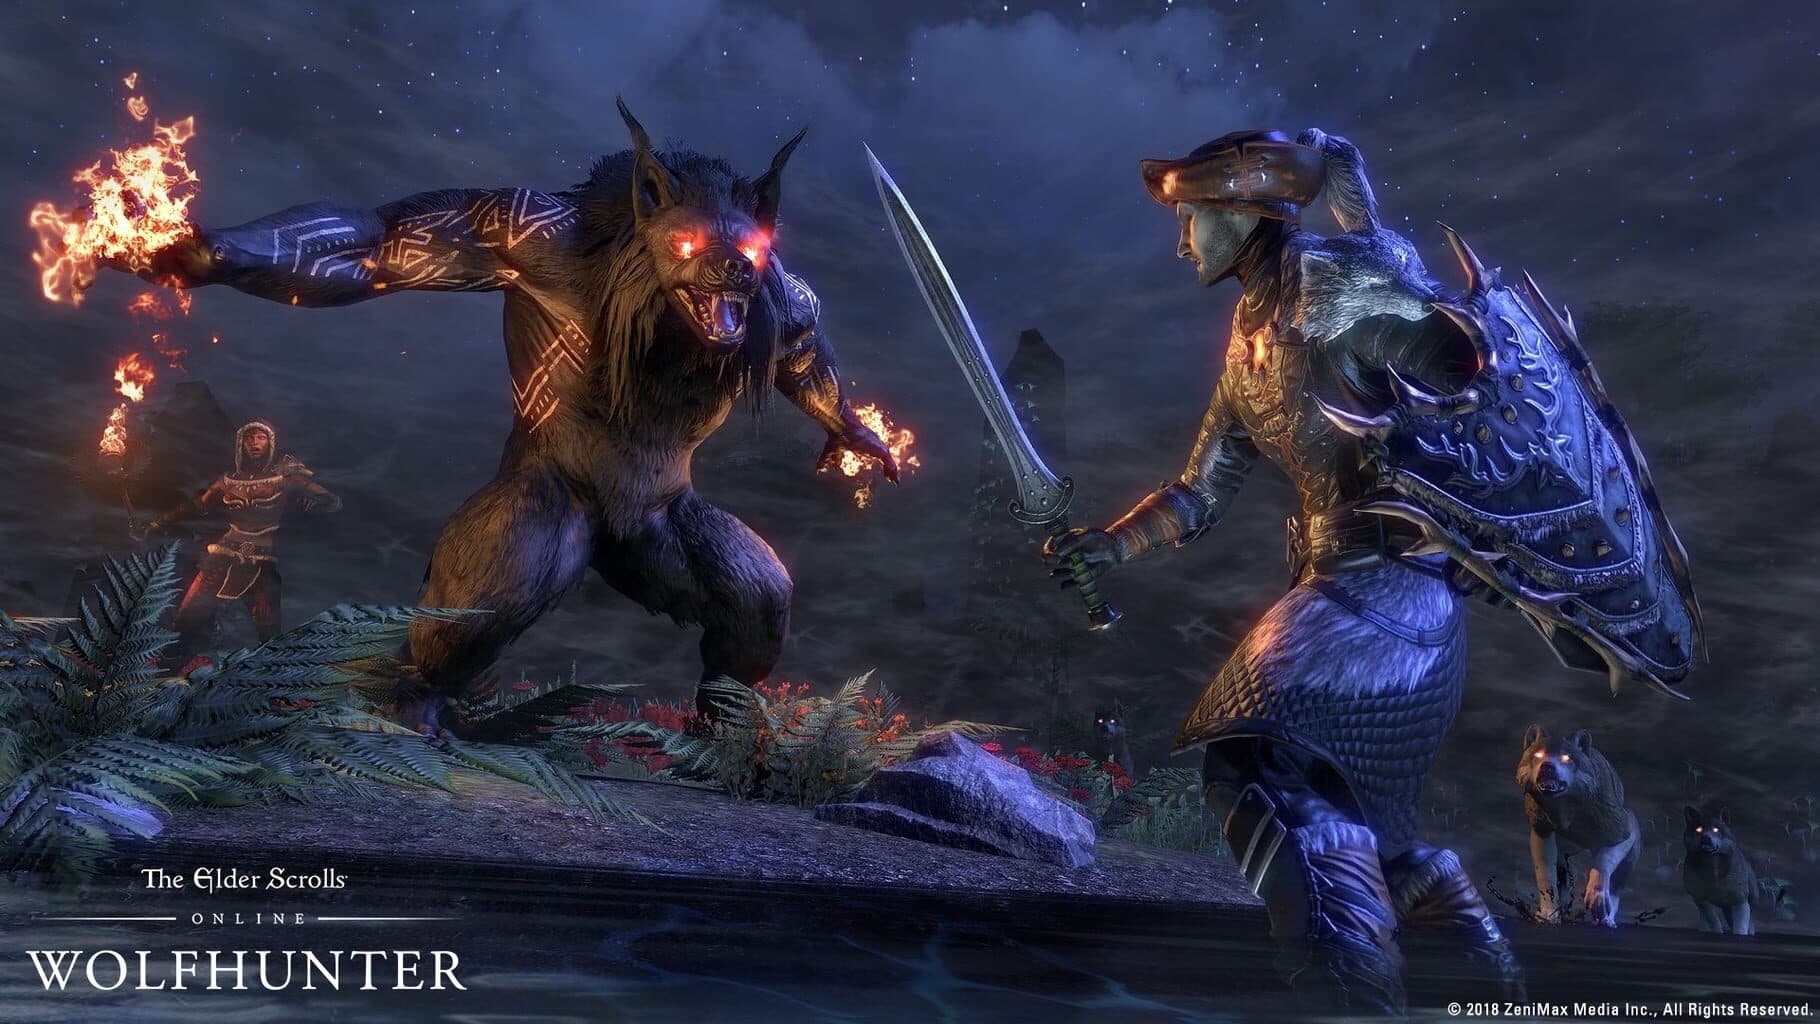 The Elder Scrolls Online: Wolfhunter Image